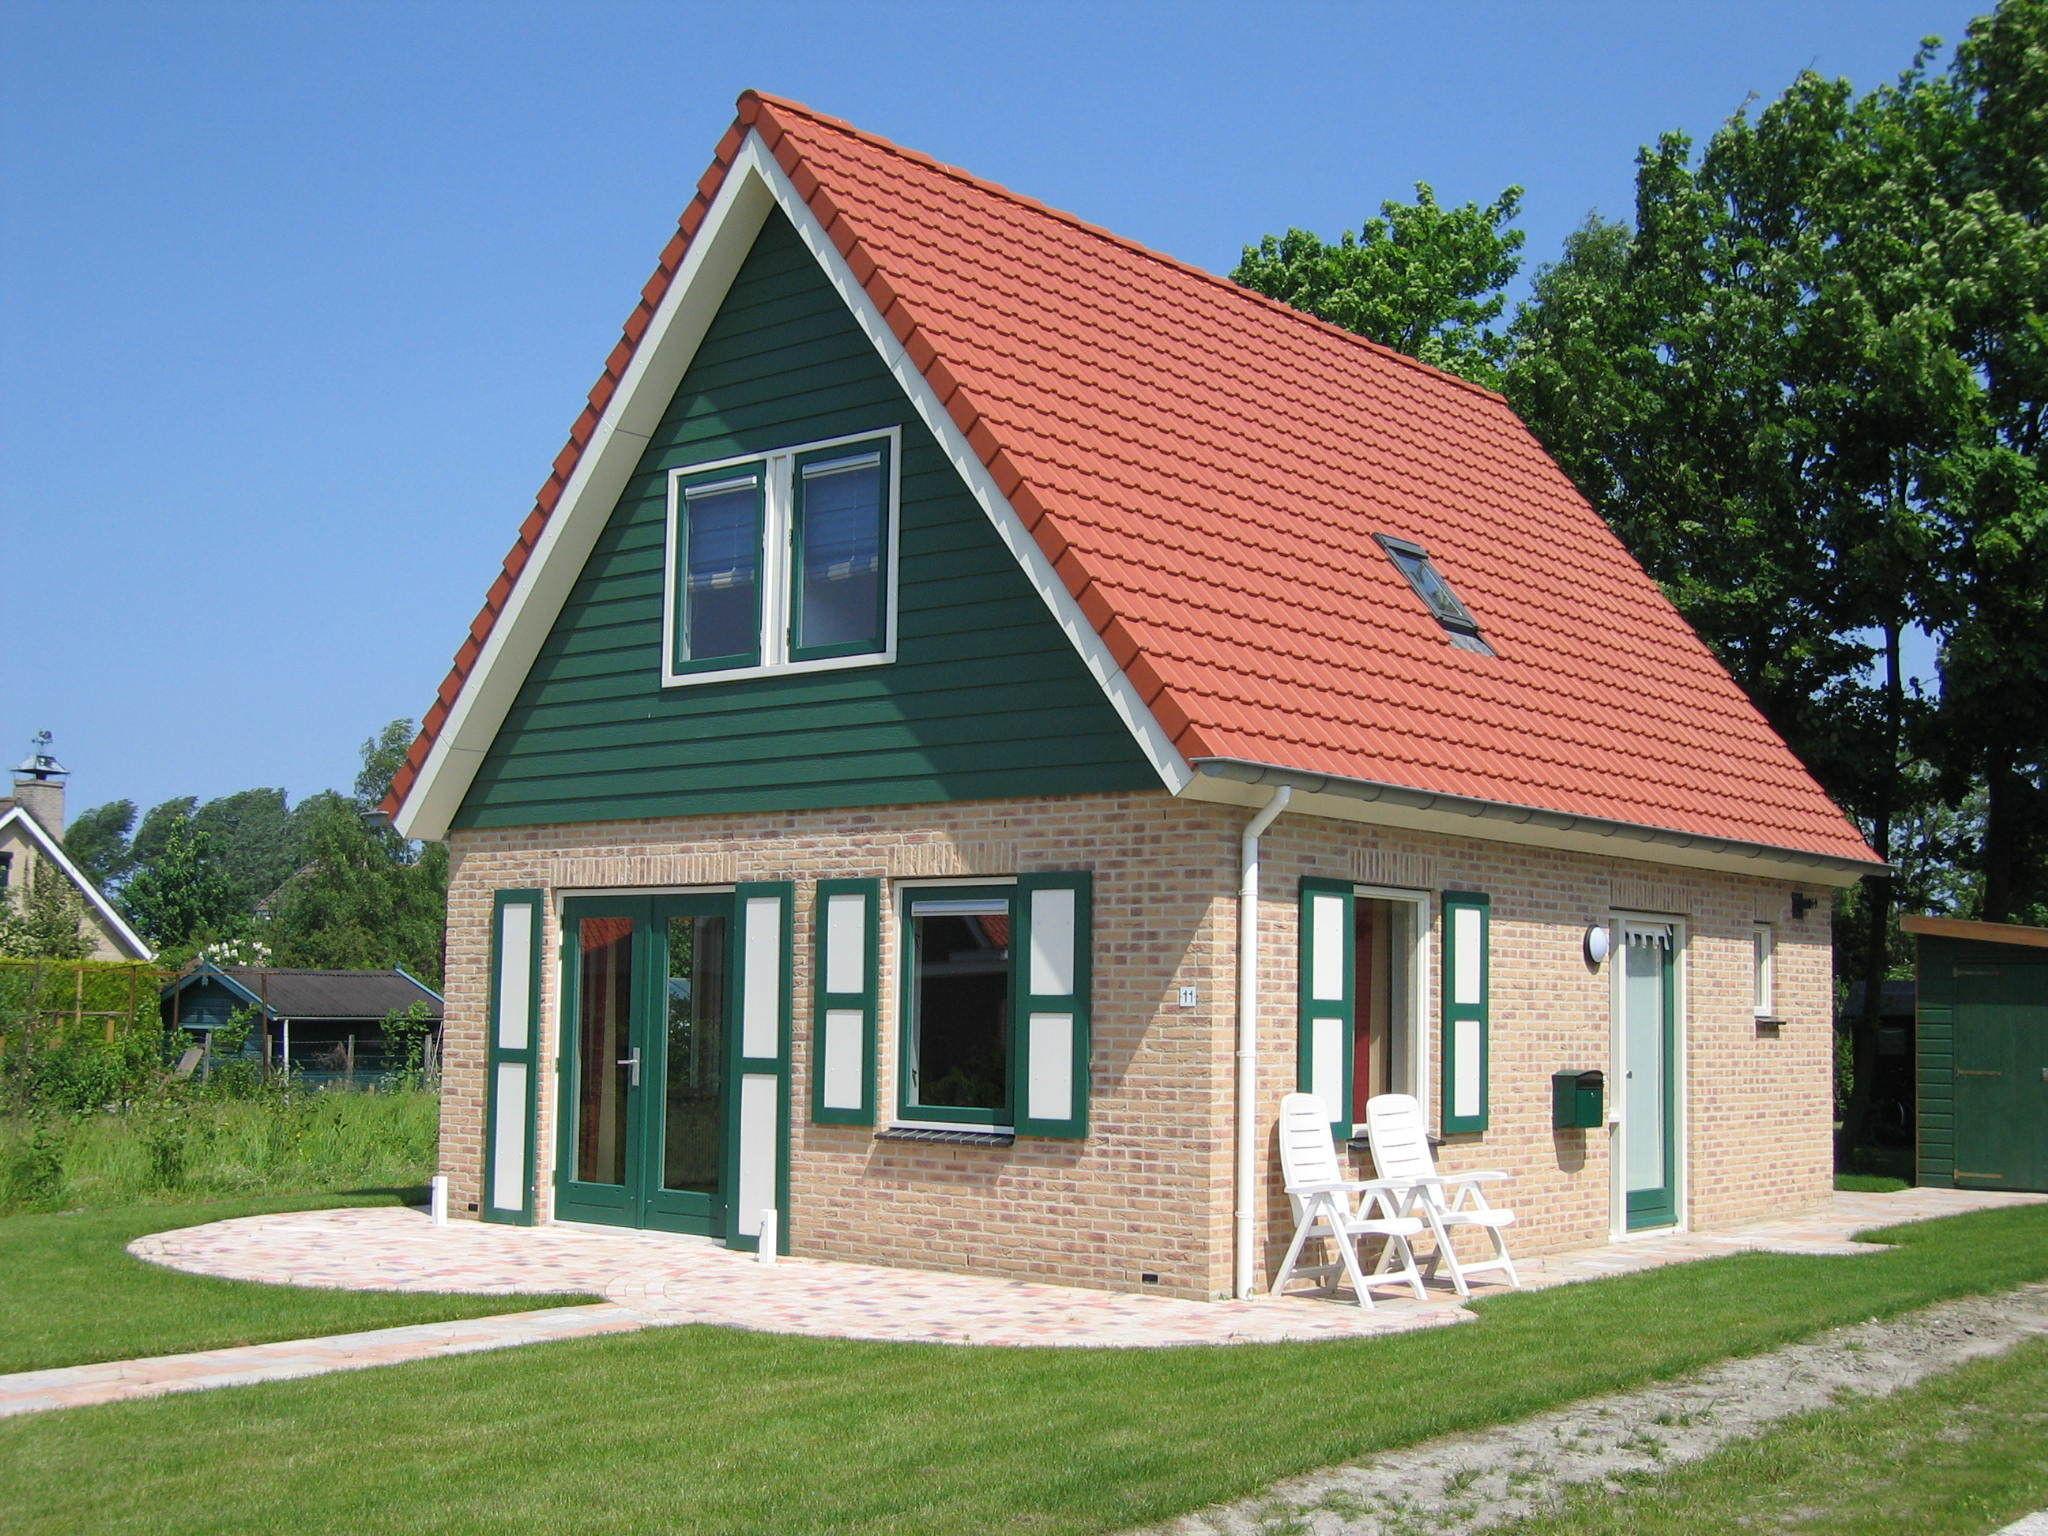 Vrijstaand vakantiehuis nabij het Grevelingenmeer